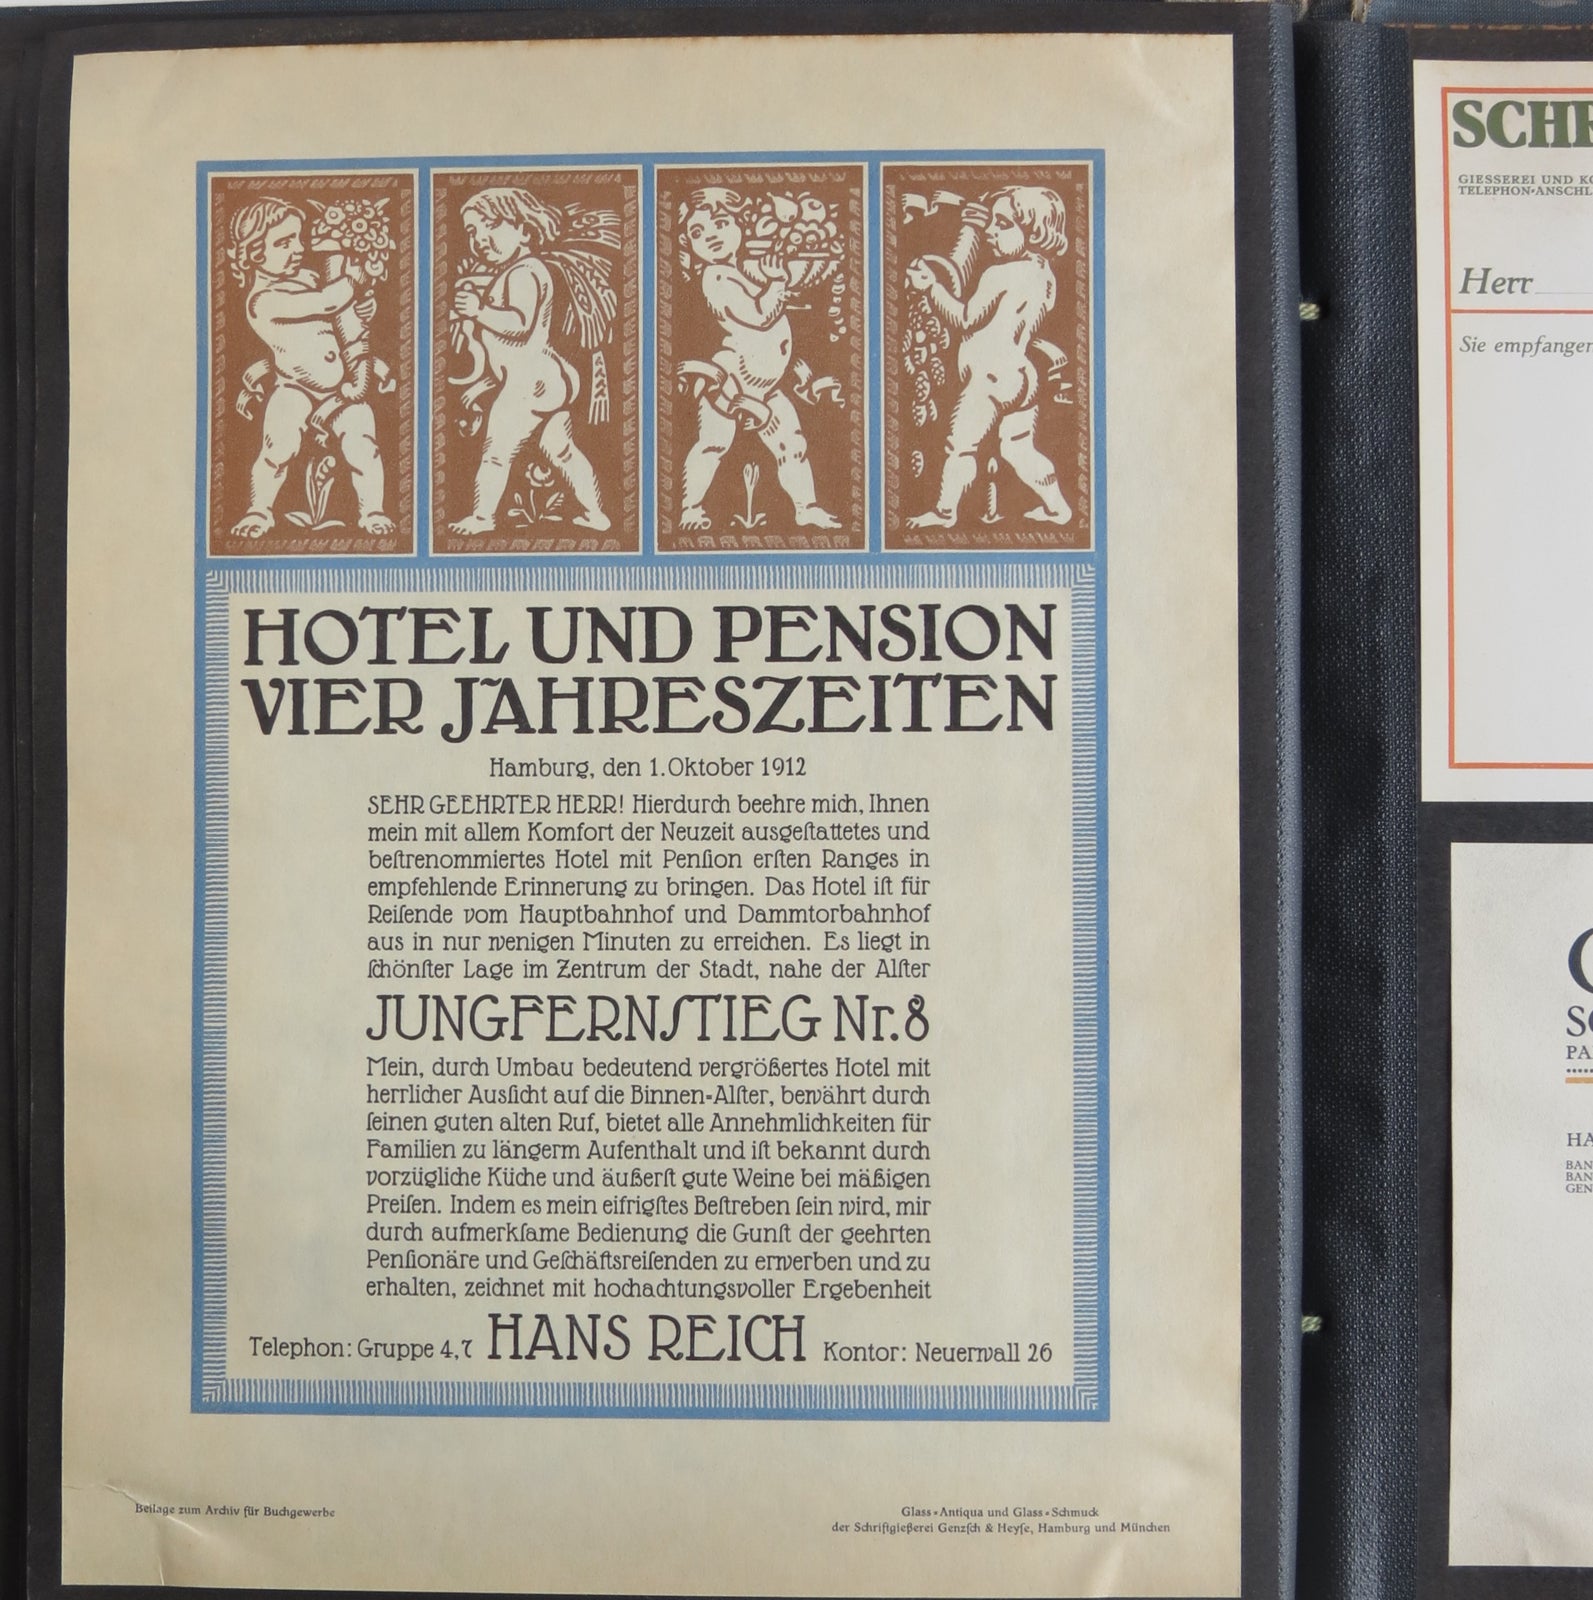 Album of typographic specimens.